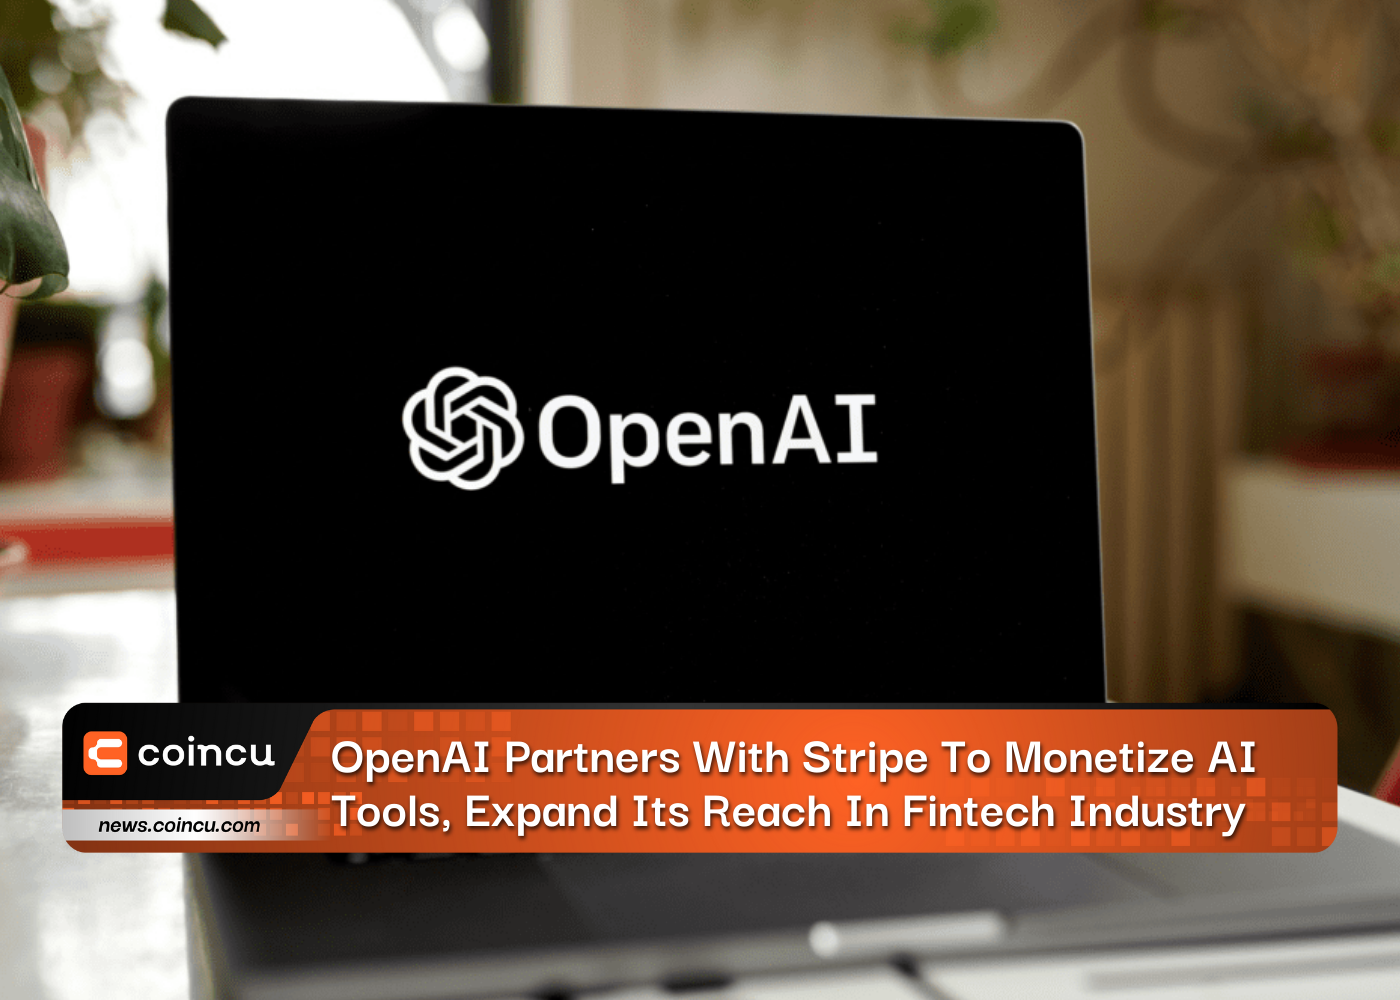 OpenAI arbeitet mit Stripe zusammen, um KI-Tools zu monetarisieren und seine Reichweite in der Fintech-Branche zu erweitern